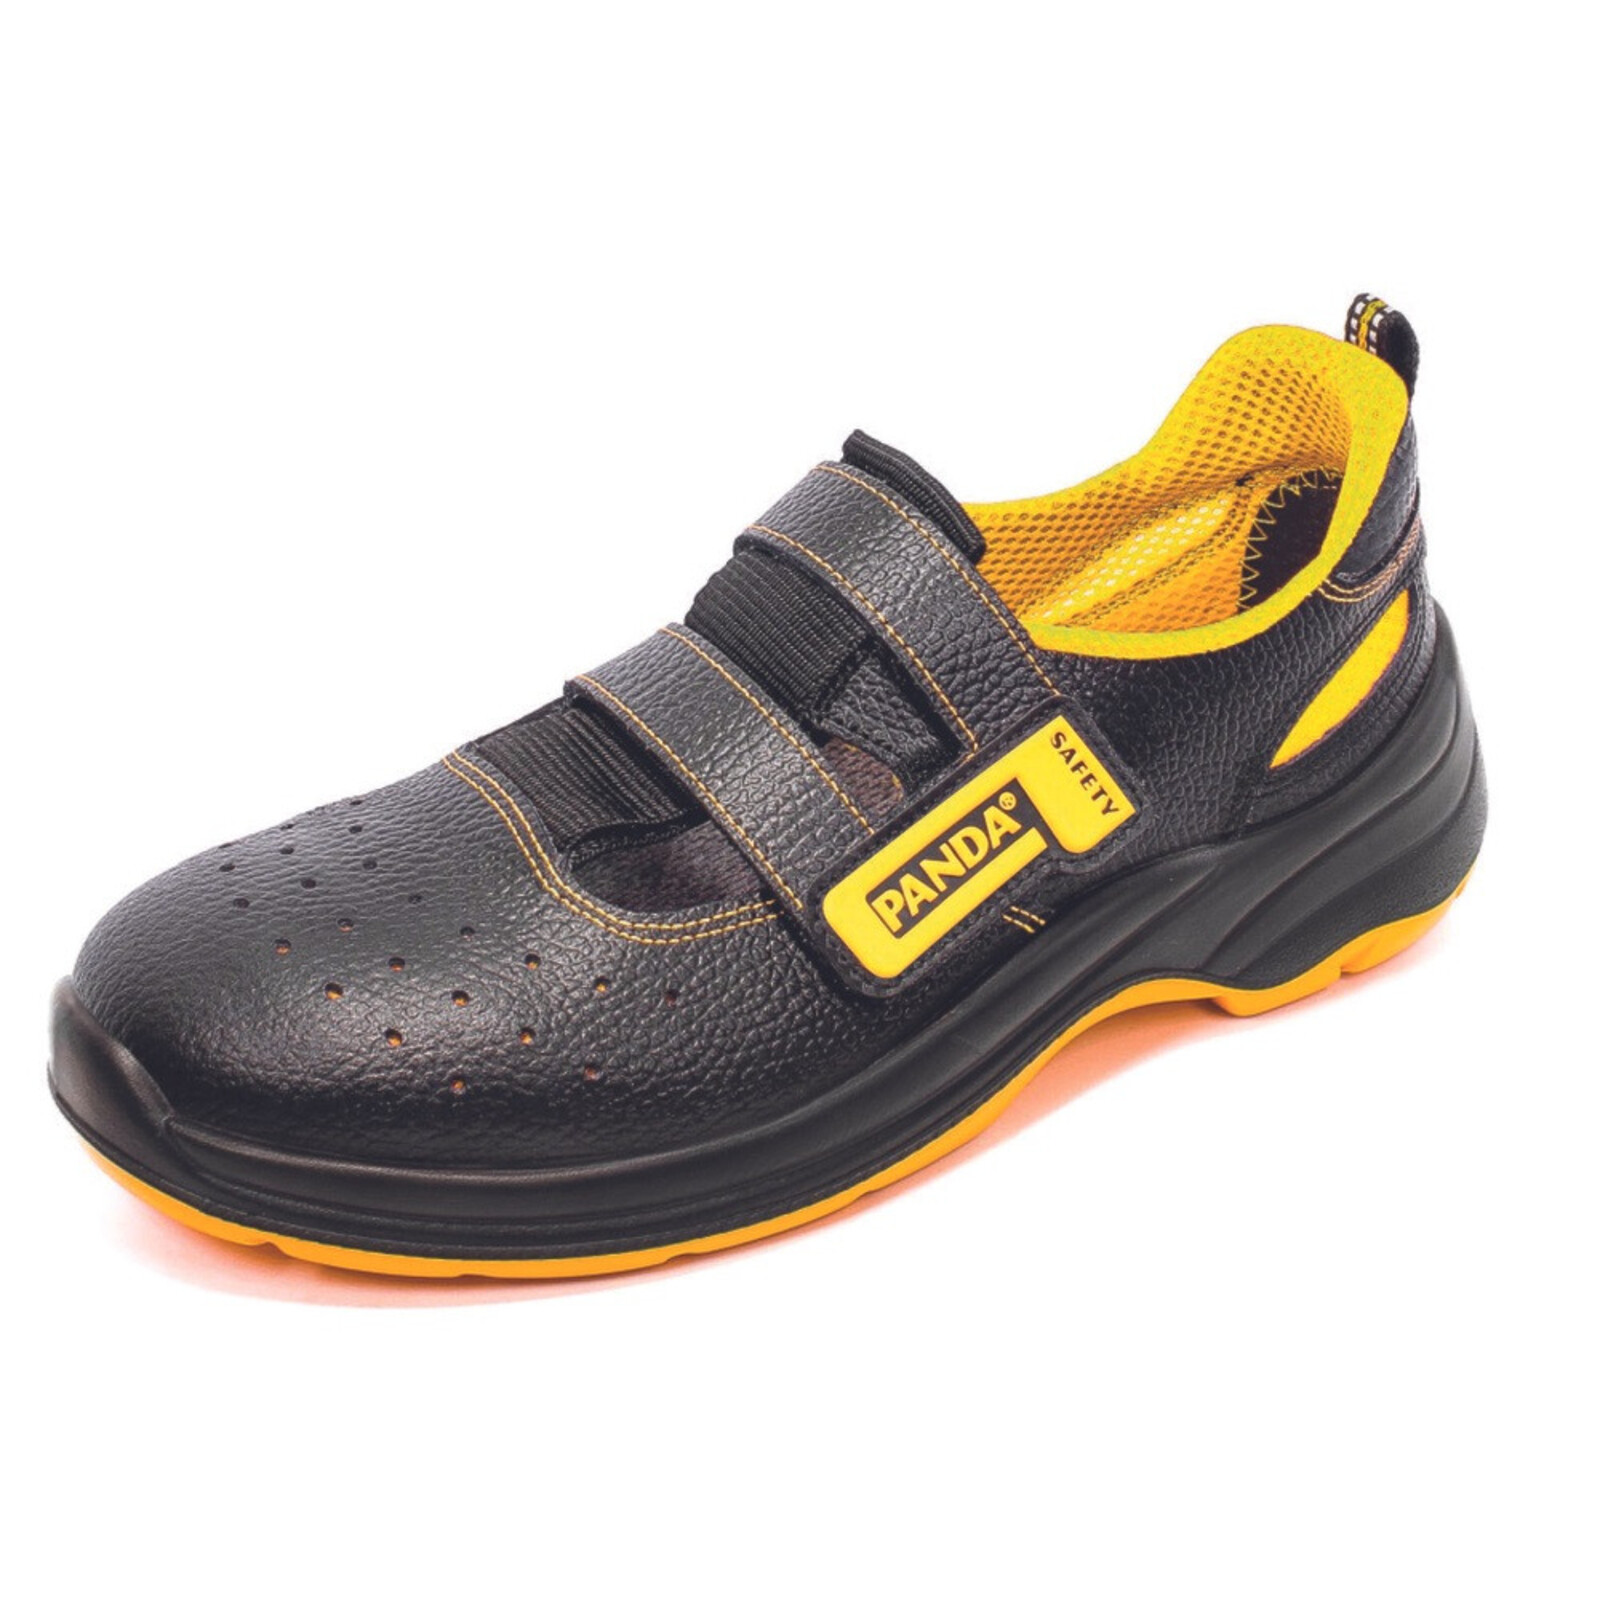 Bezpečnostné sandále Panda Basic Venezia MF S1P SRC - veľkosť: 36, farba: čierna/žltá